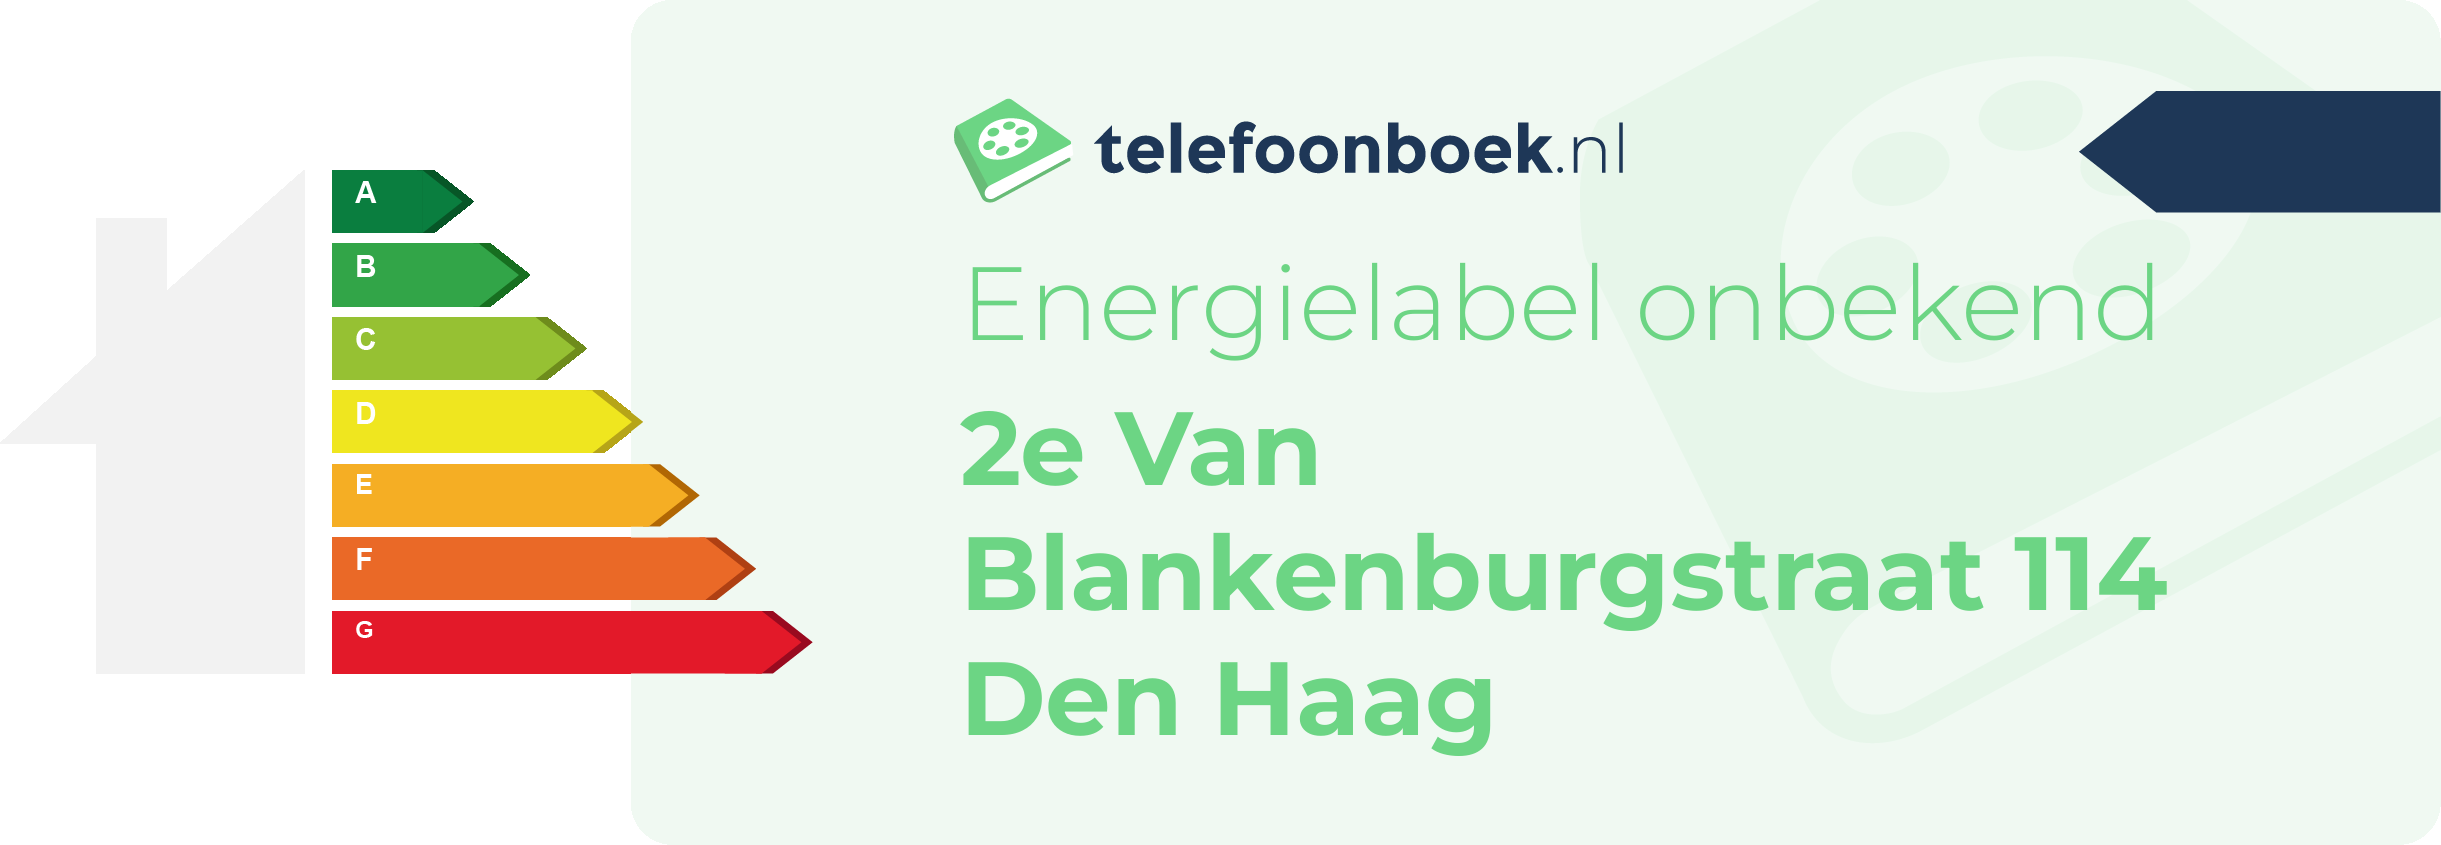 Energielabel 2e Van Blankenburgstraat 114 Den Haag